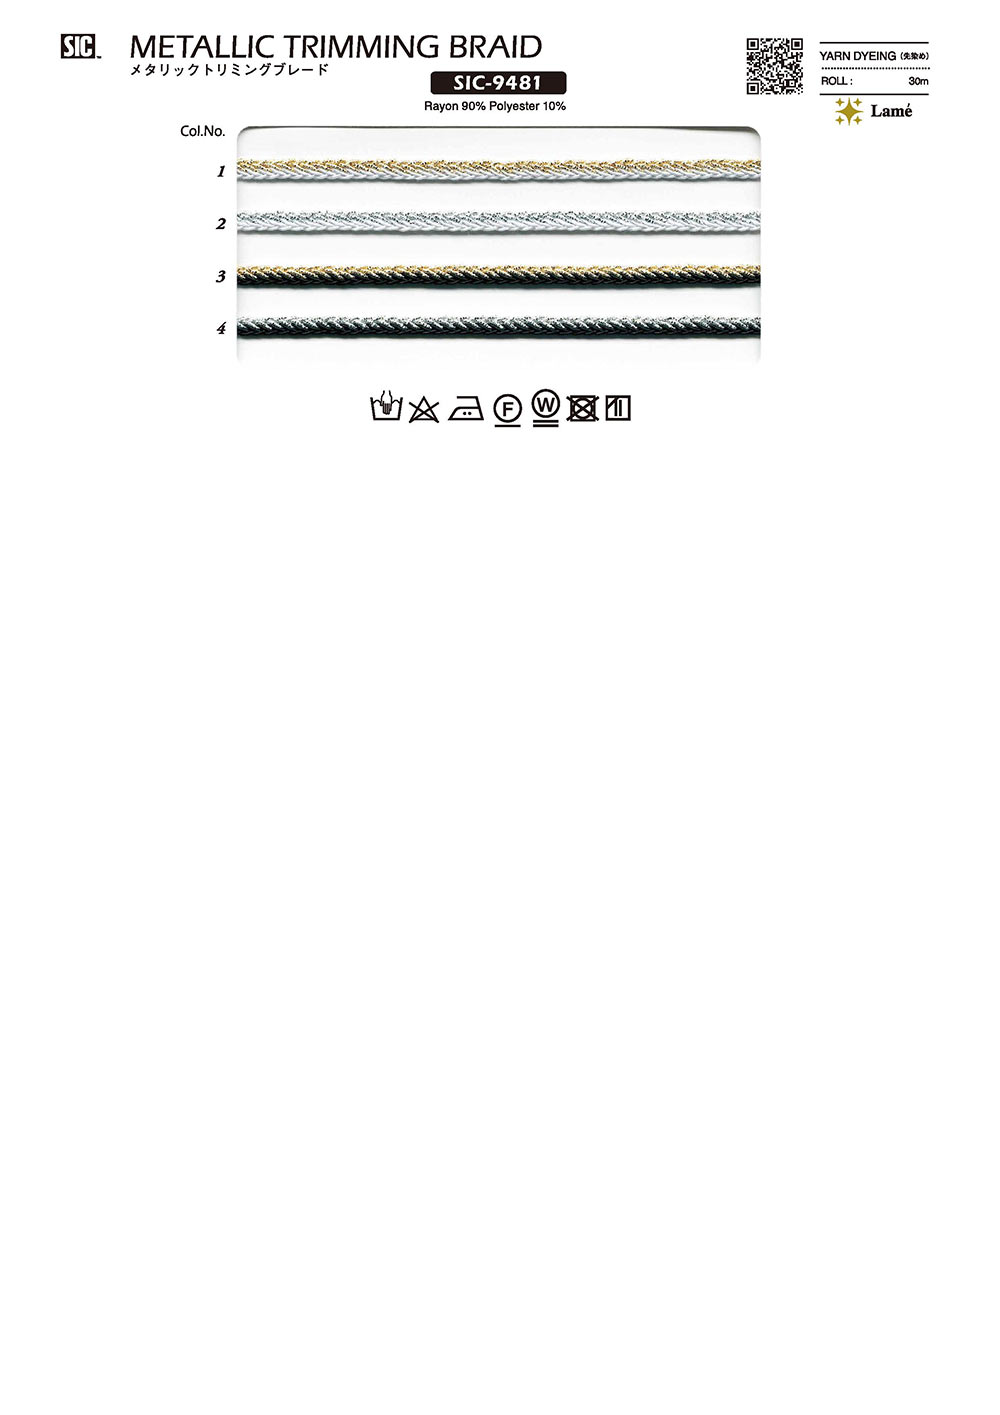 SIC-9481 メタリックトリミングブレード[リボン・テープ・コード] SHINDO(SIC)